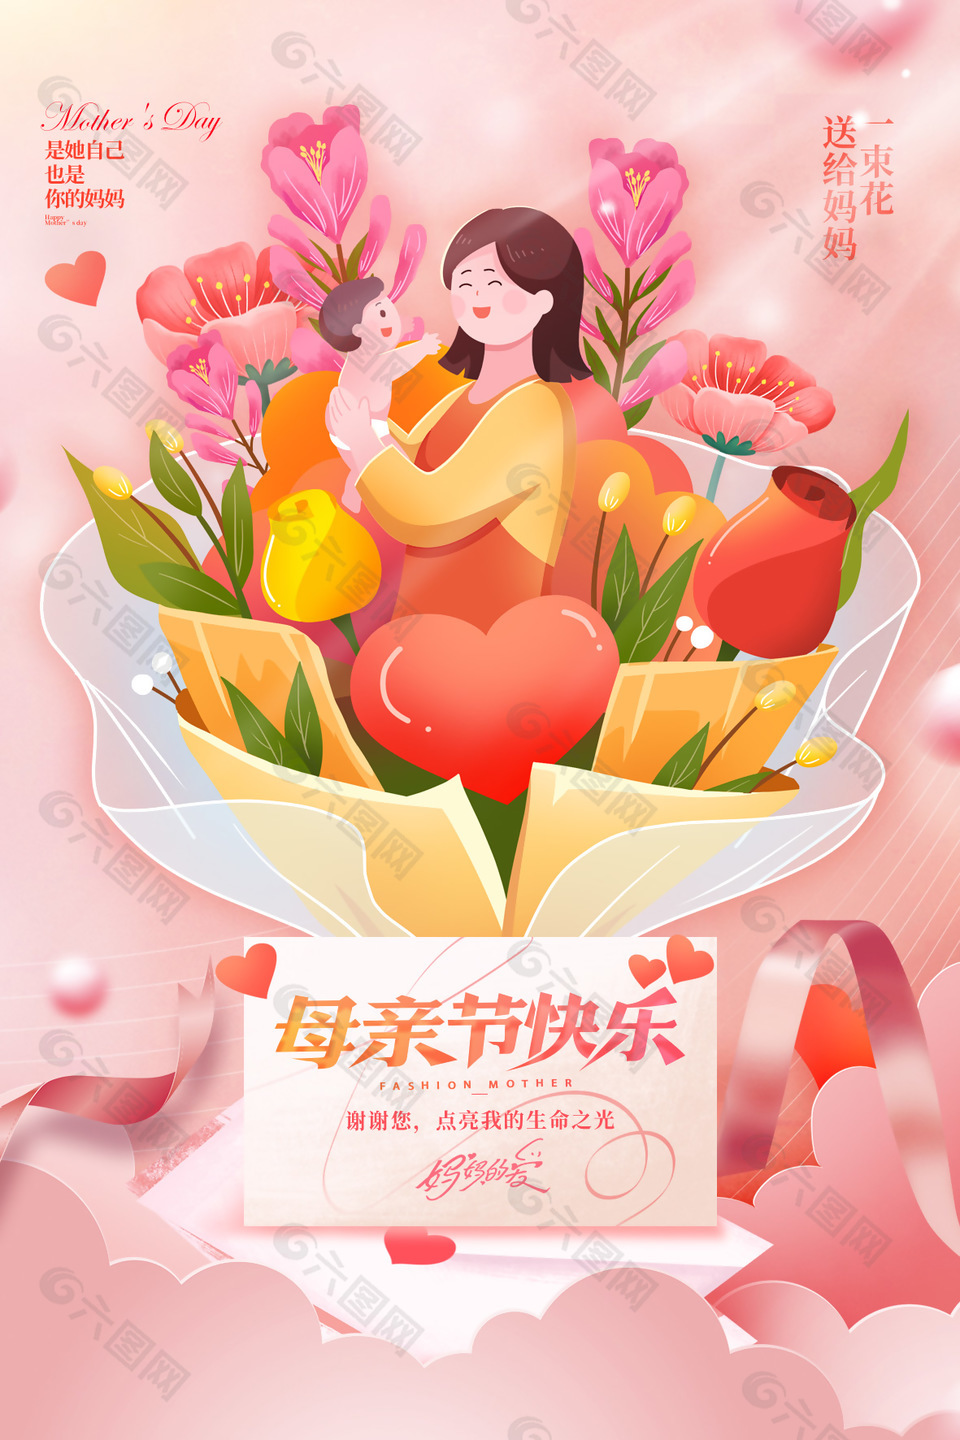 送给妈妈一束花母亲节鲜花主题海报